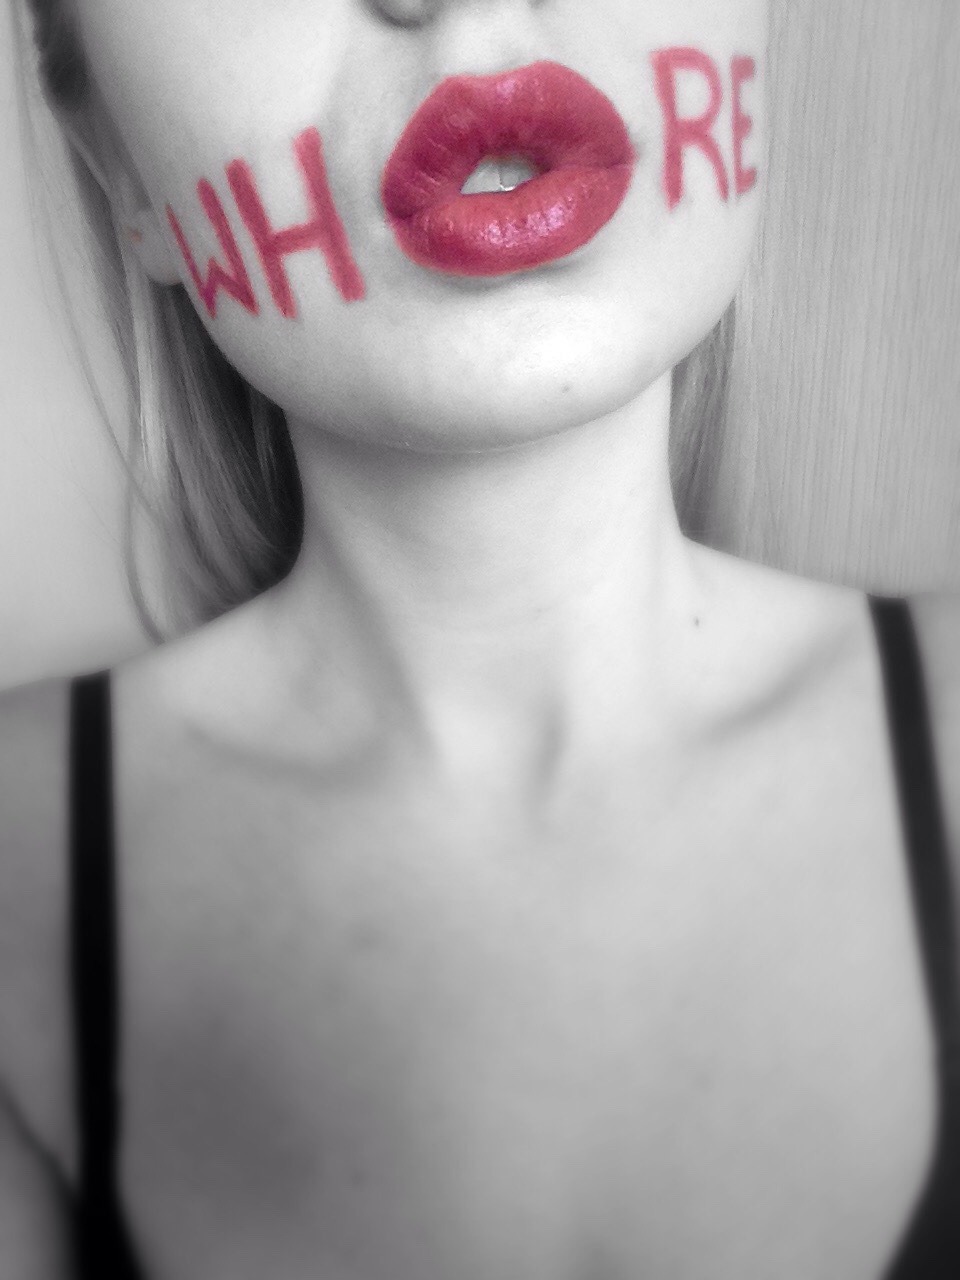 Lipstick whore